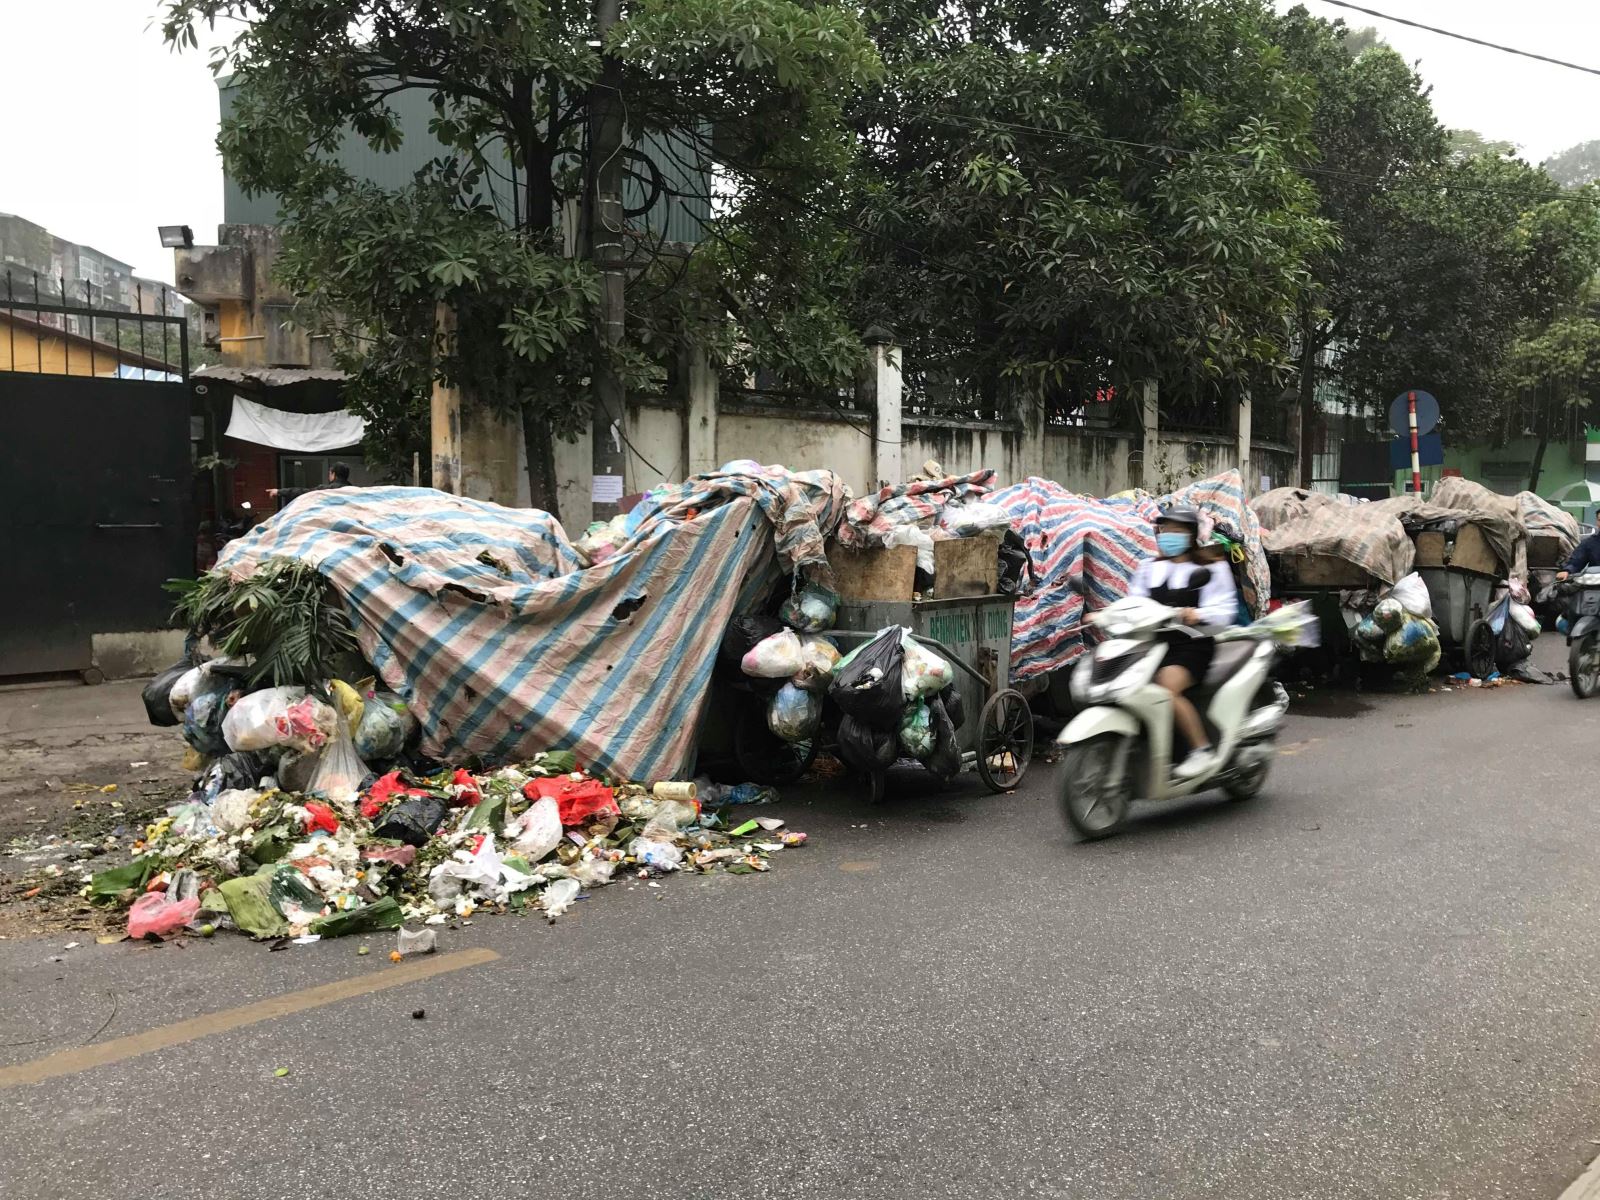 Thông xe vào bãi rác Hà Nội được giải nguy